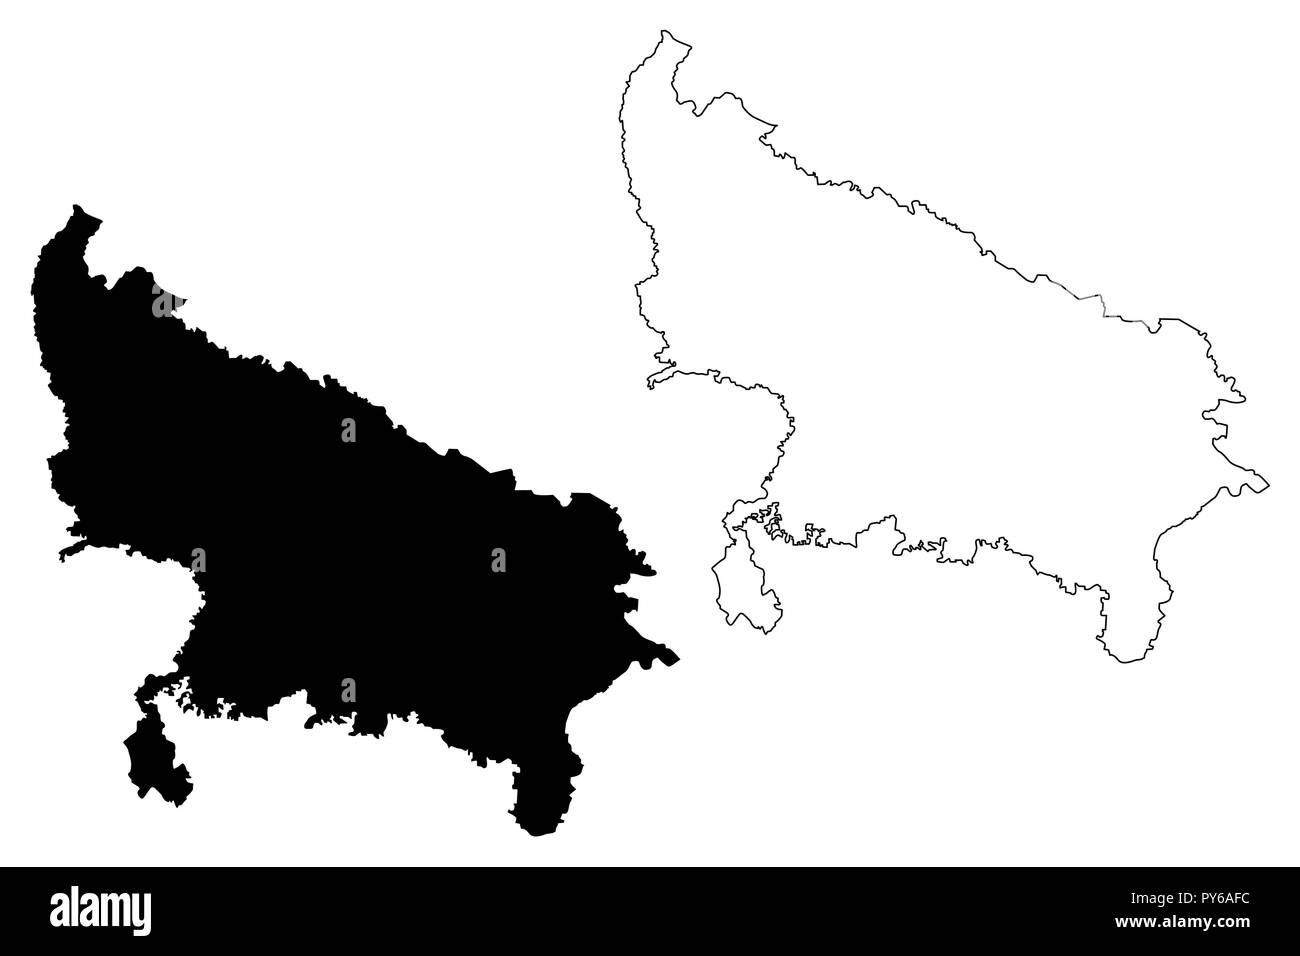 Uttar Pradesh (Mitgliedstaaten und Union gebieten von Indien, Föderierte Staaten, Republik Indien) Karte Vektor-illustration, kritzeln Skizze Uttar Pradesh (UP) Stock Vektor